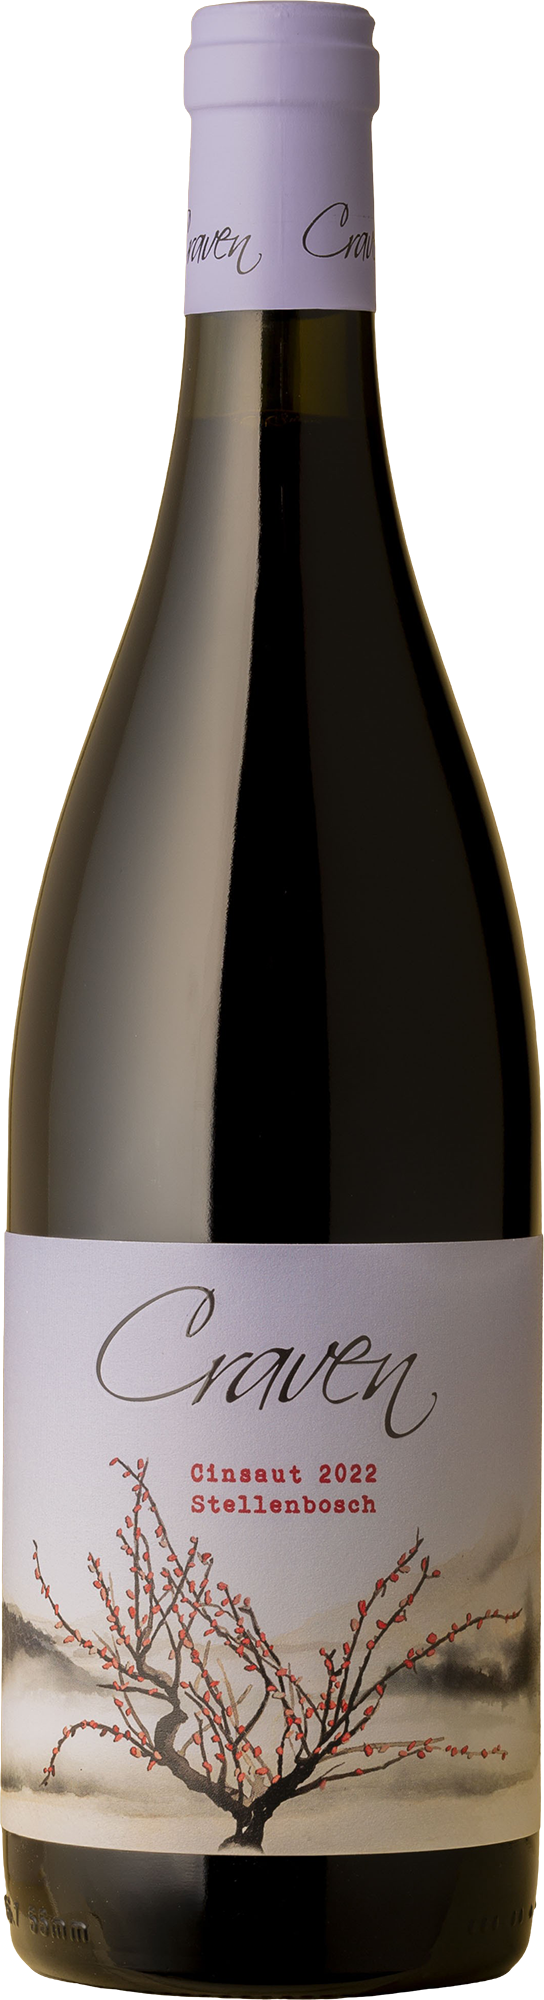 Craven Wines - Rustenhoff Vineyard Cinsault 2022